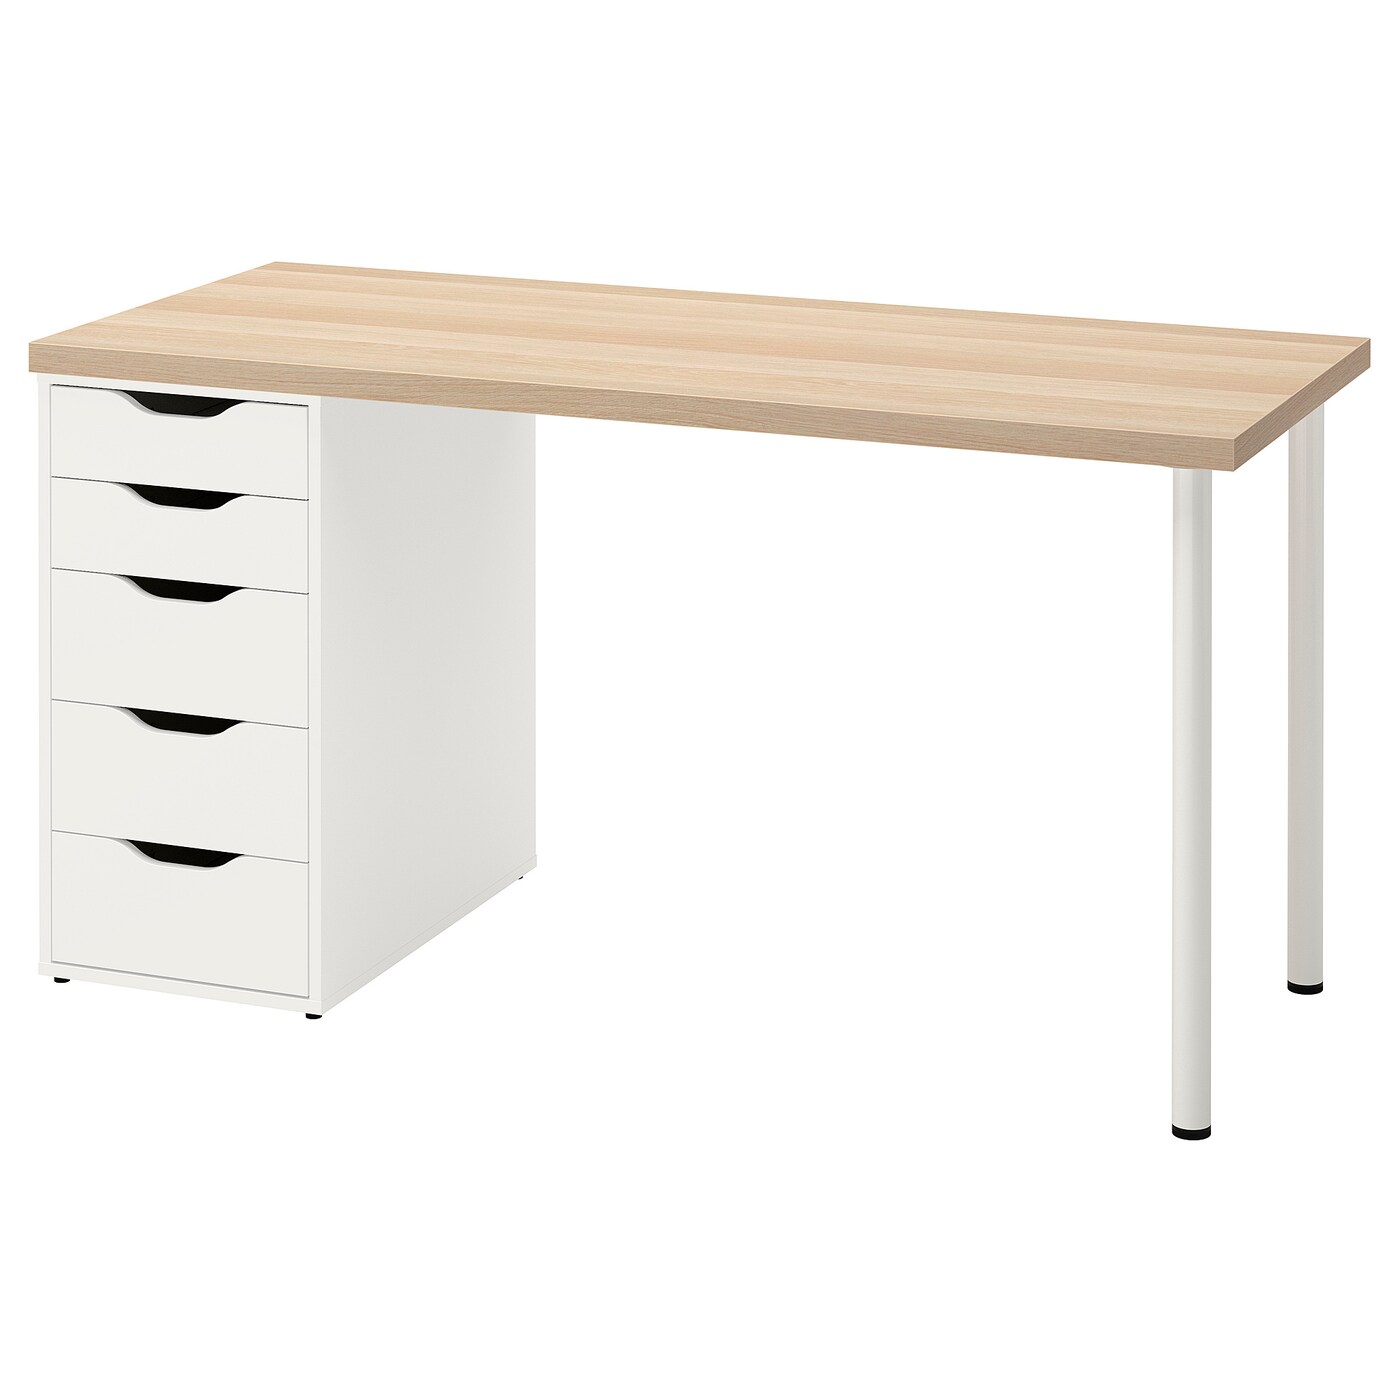 LAGKAPTEN / ALEX desk white stained oak effect/white - IKEA